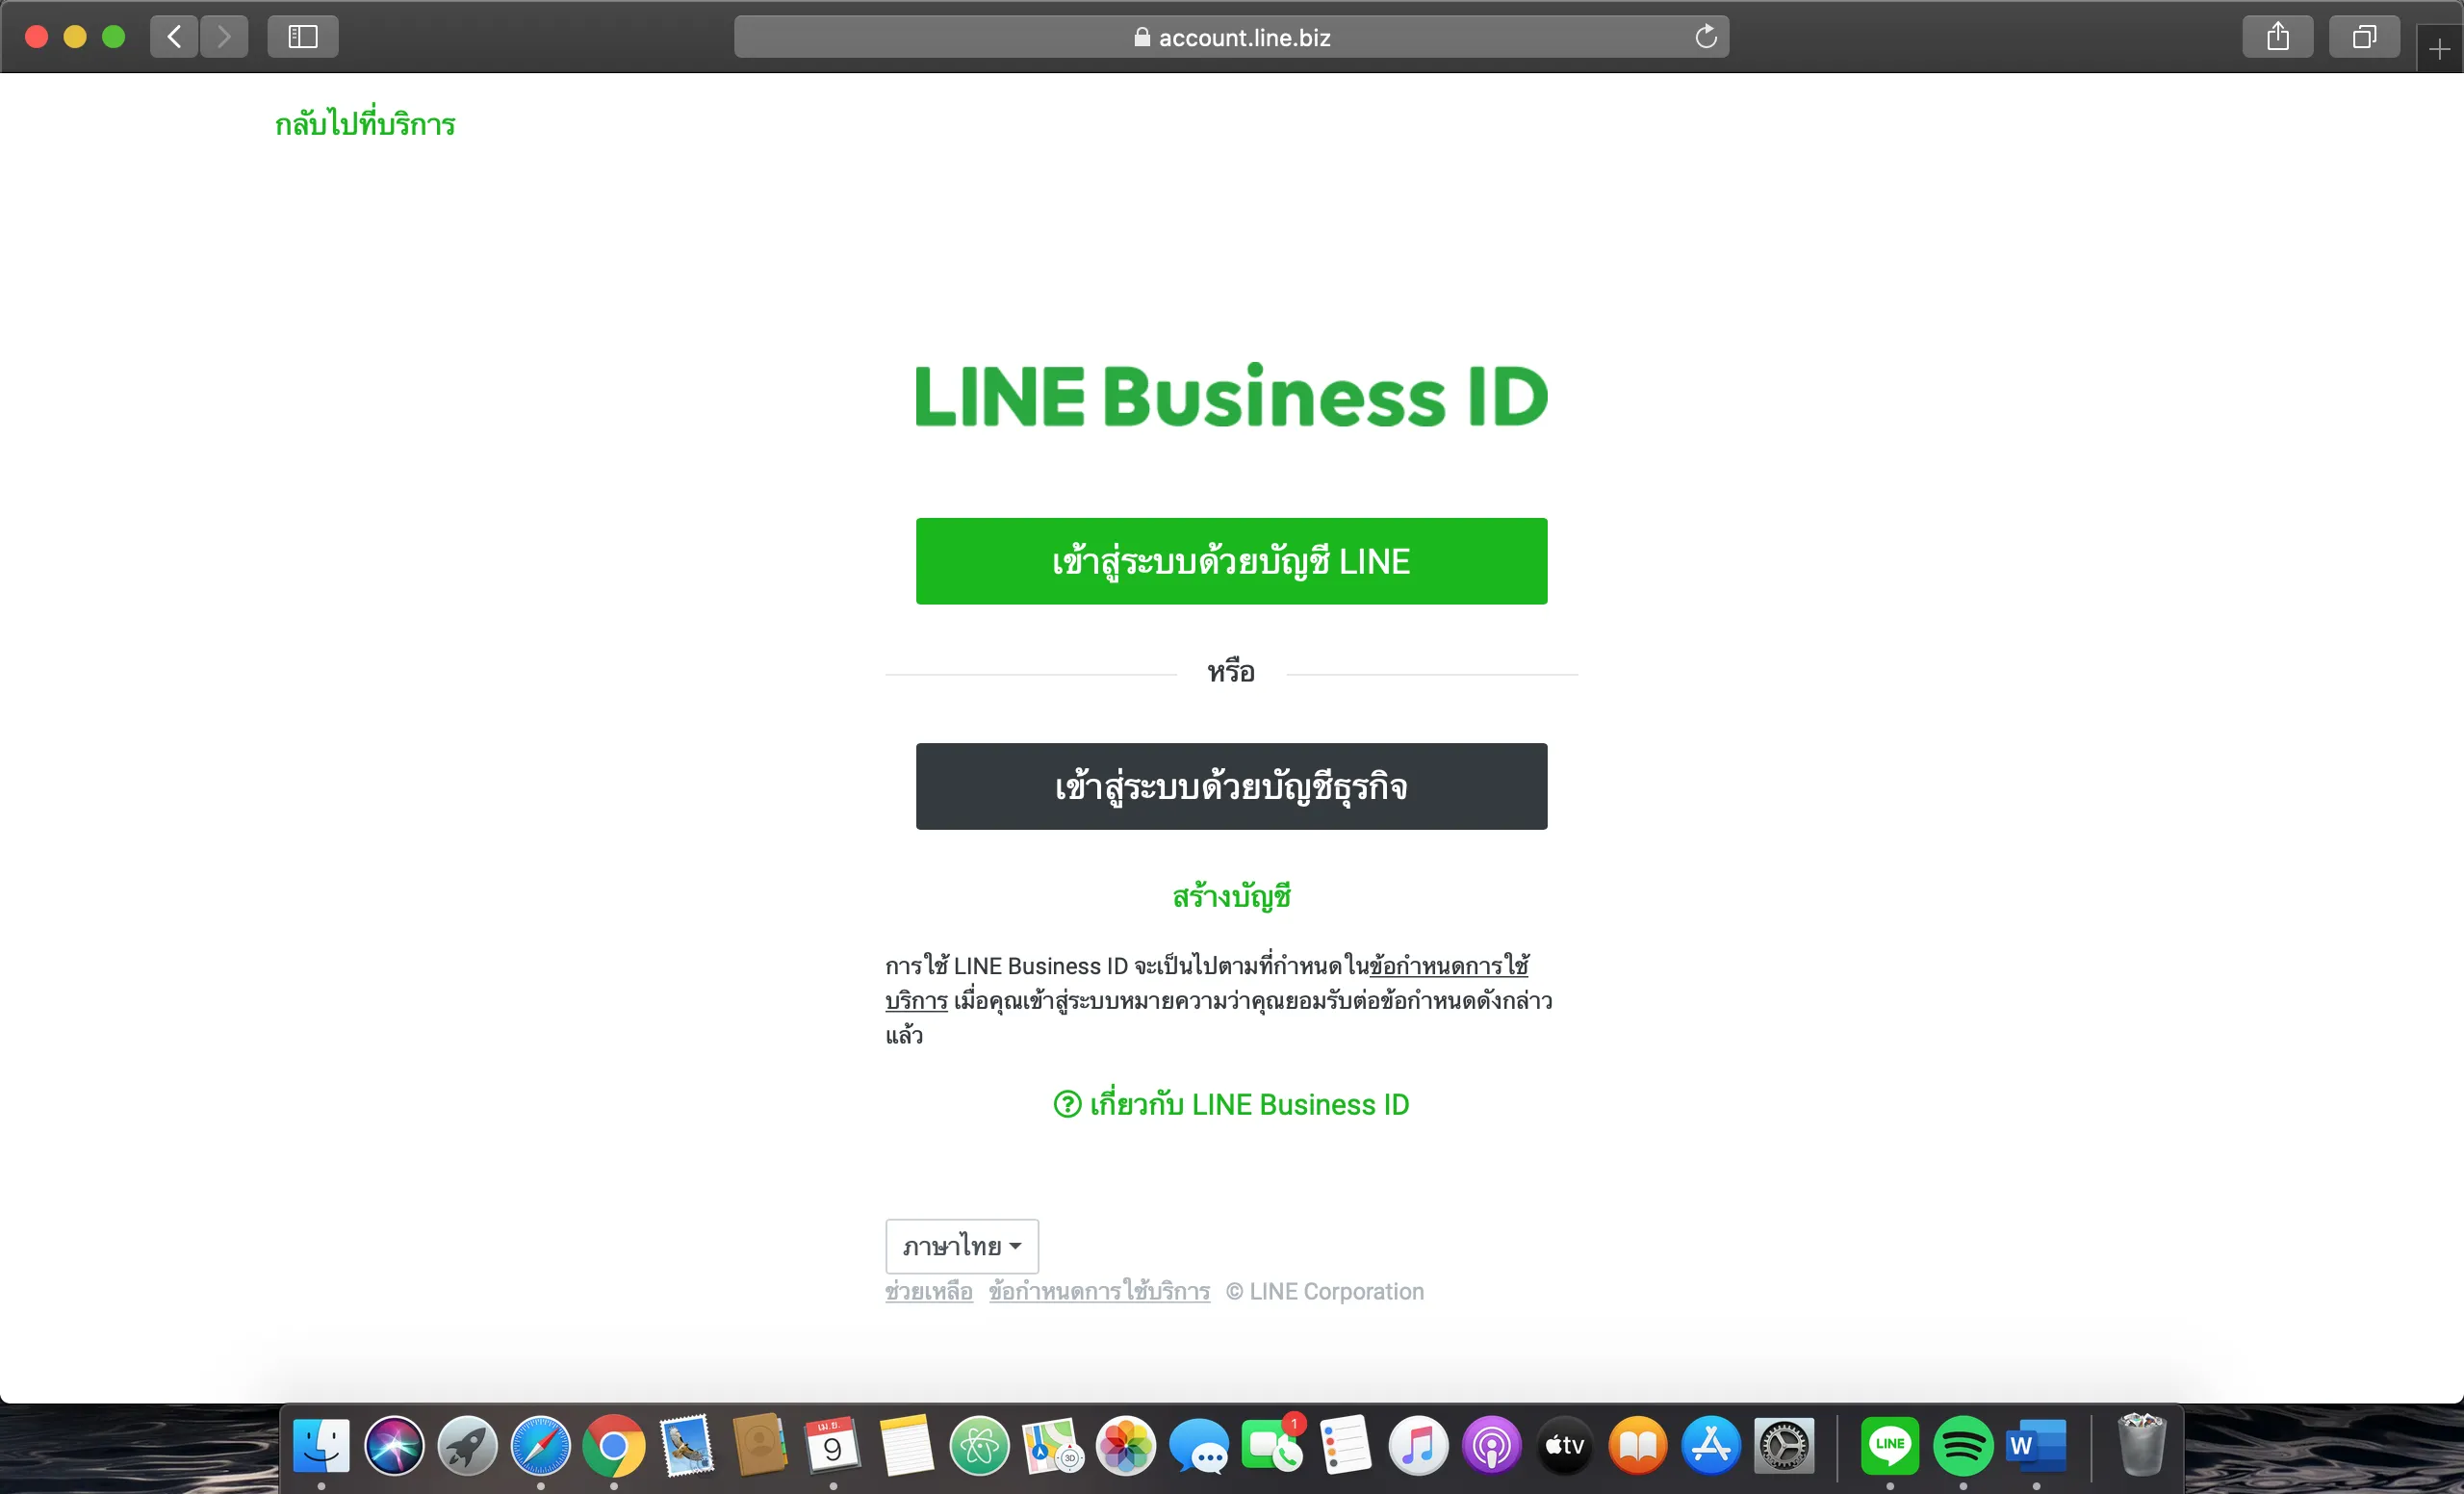 วิธีสร้าง QR Code บน LINE Official Account